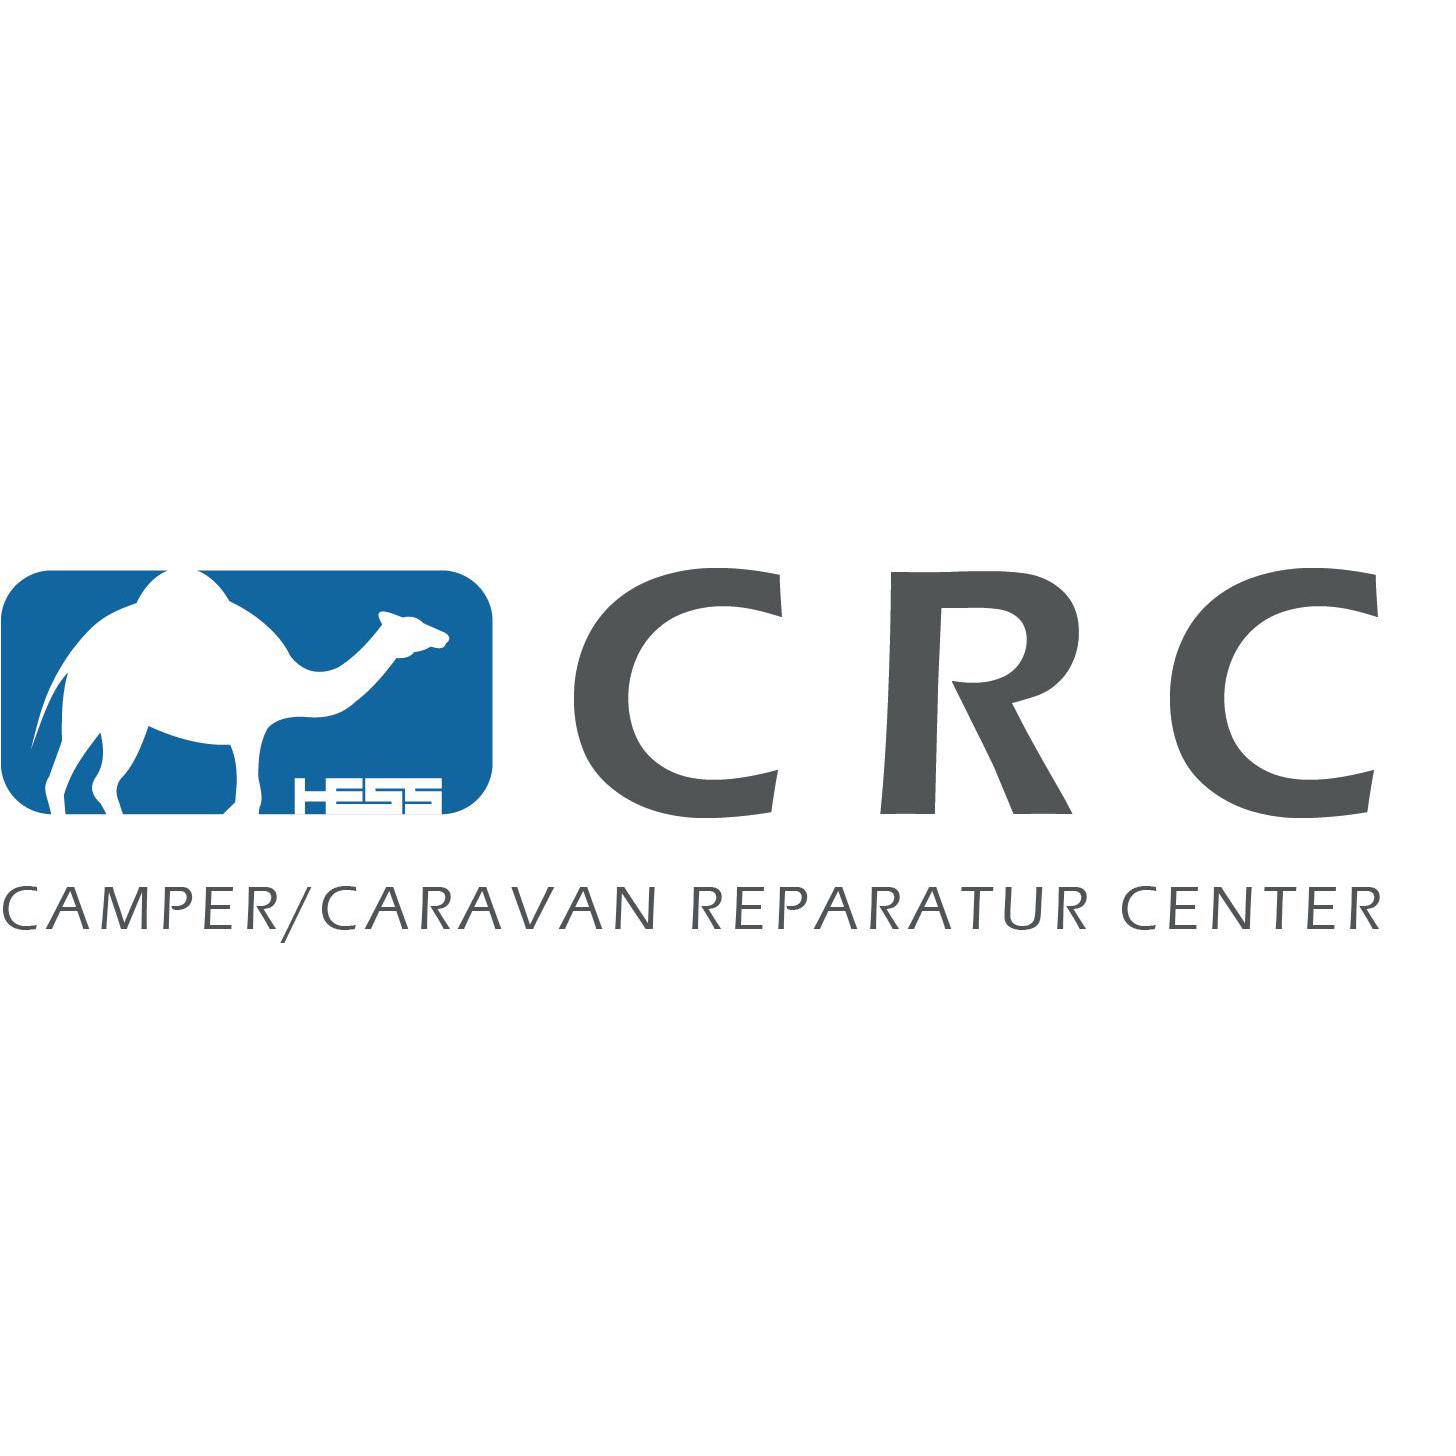 Camper / Caravan Rep Center Logo